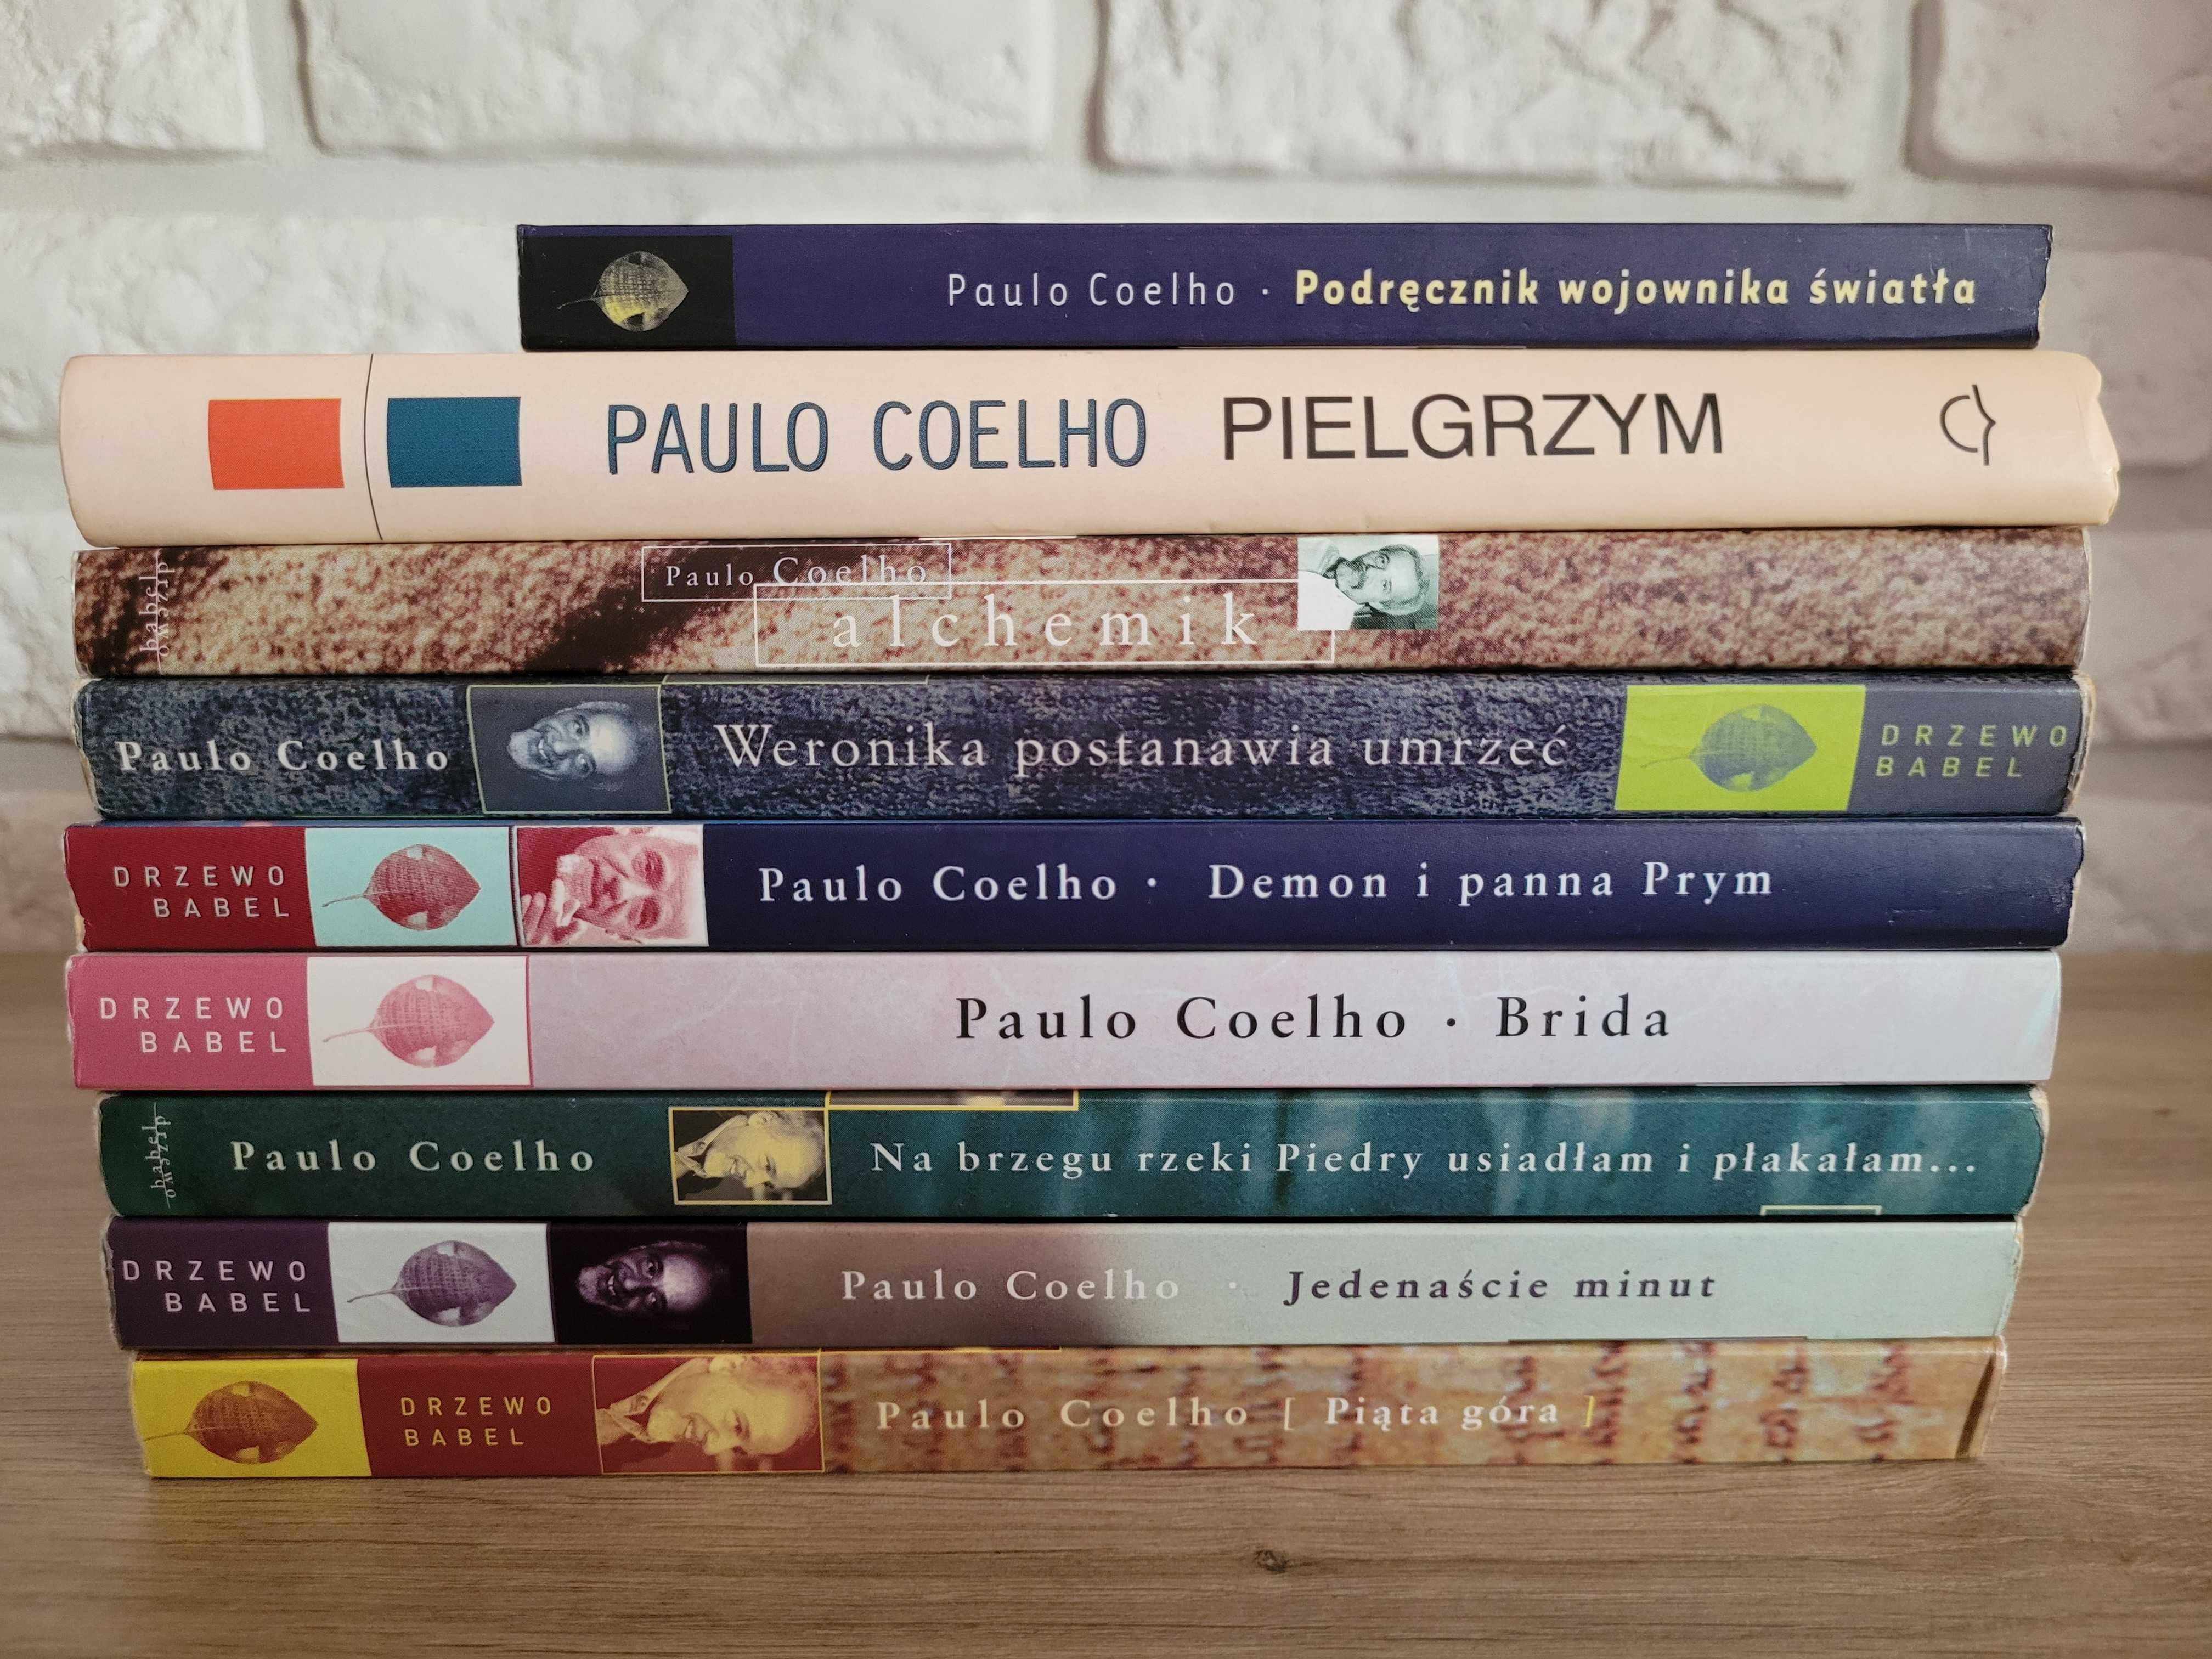 Paulo Coelho 9 książek